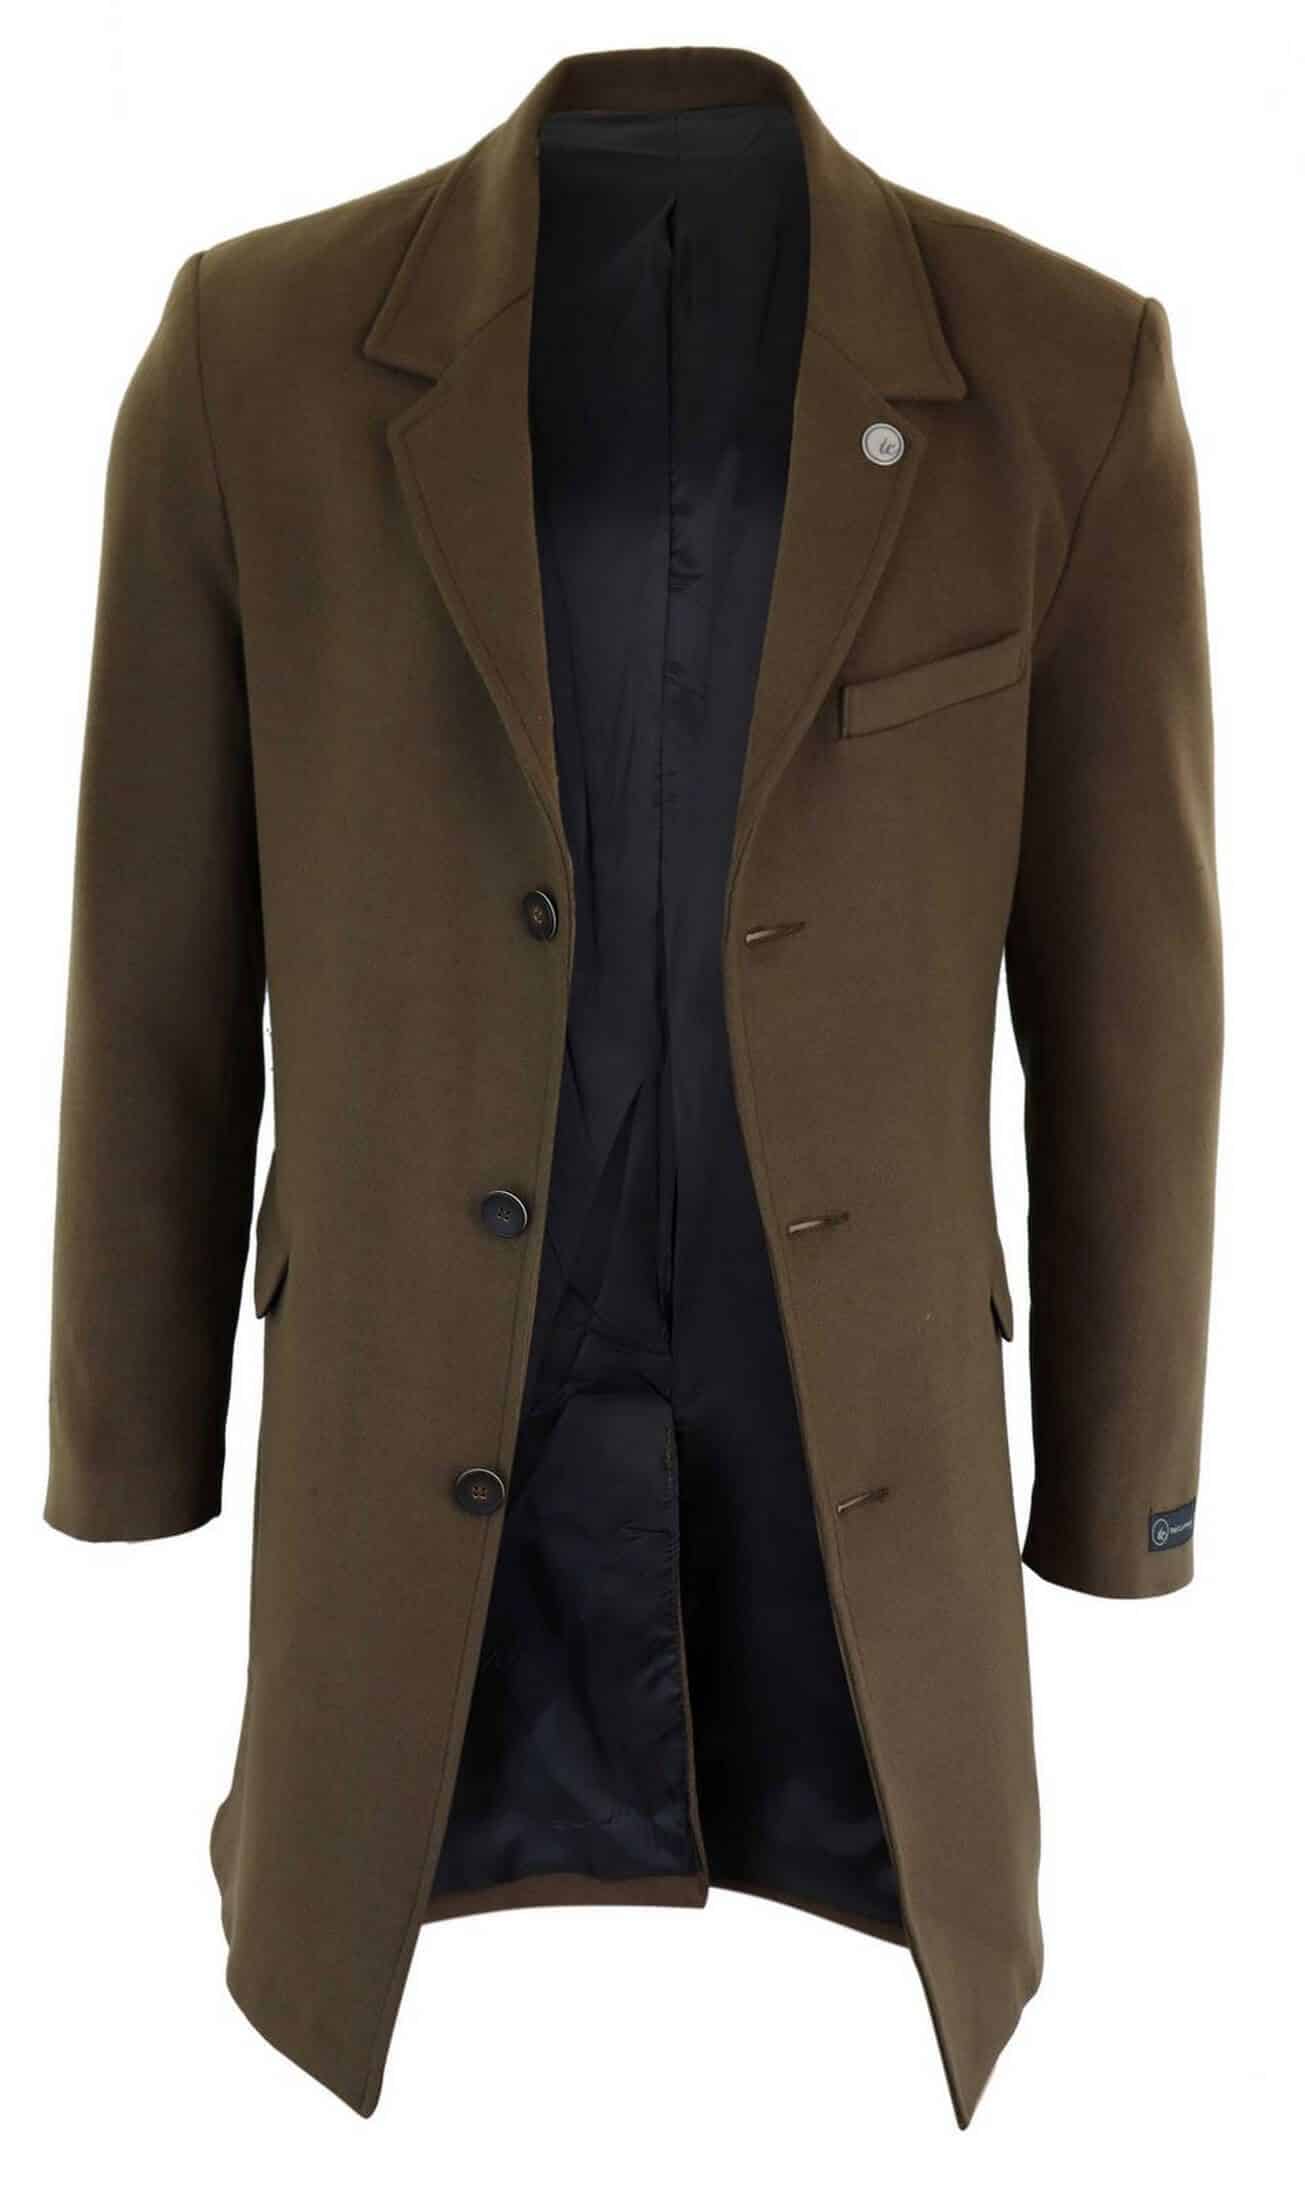 Men's Classic Wool Long Overcoat-Brown: Buy Online - Happy Gentleman